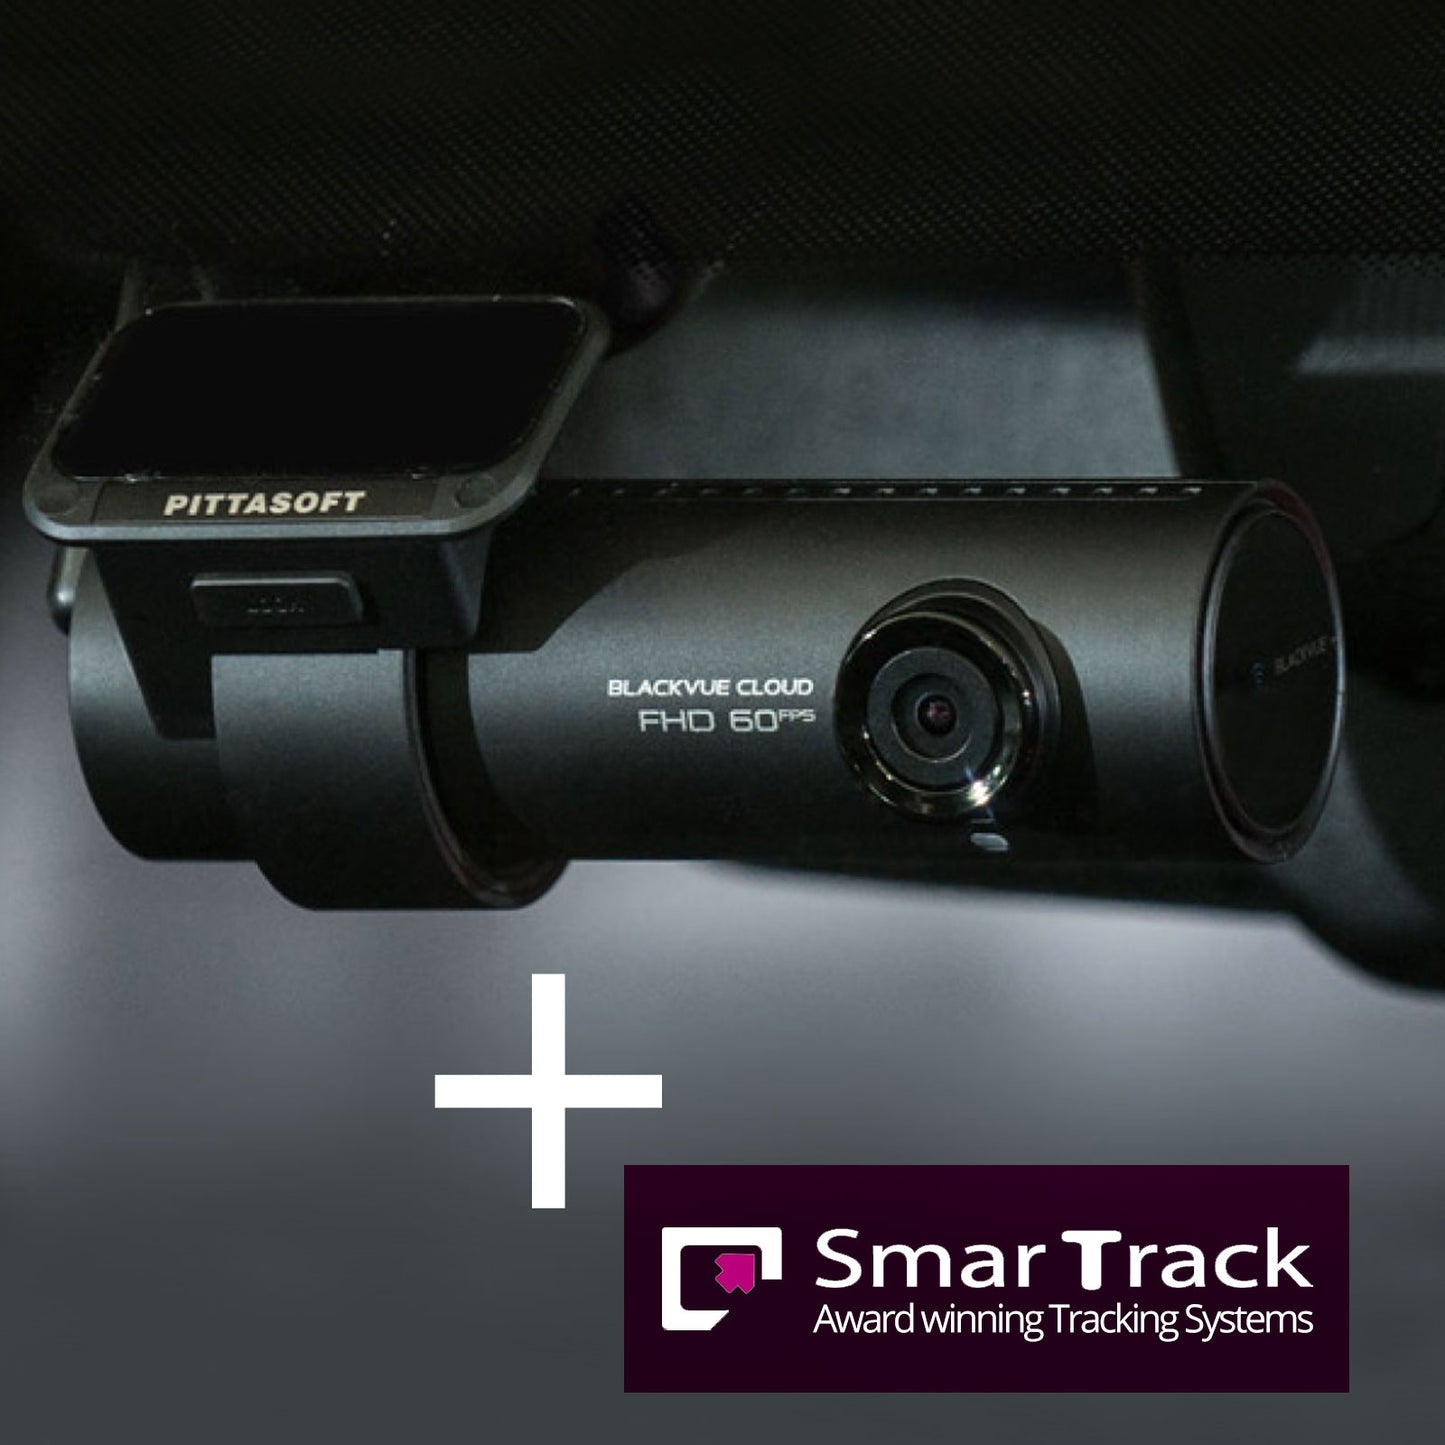 The Camera & Tracker Saver